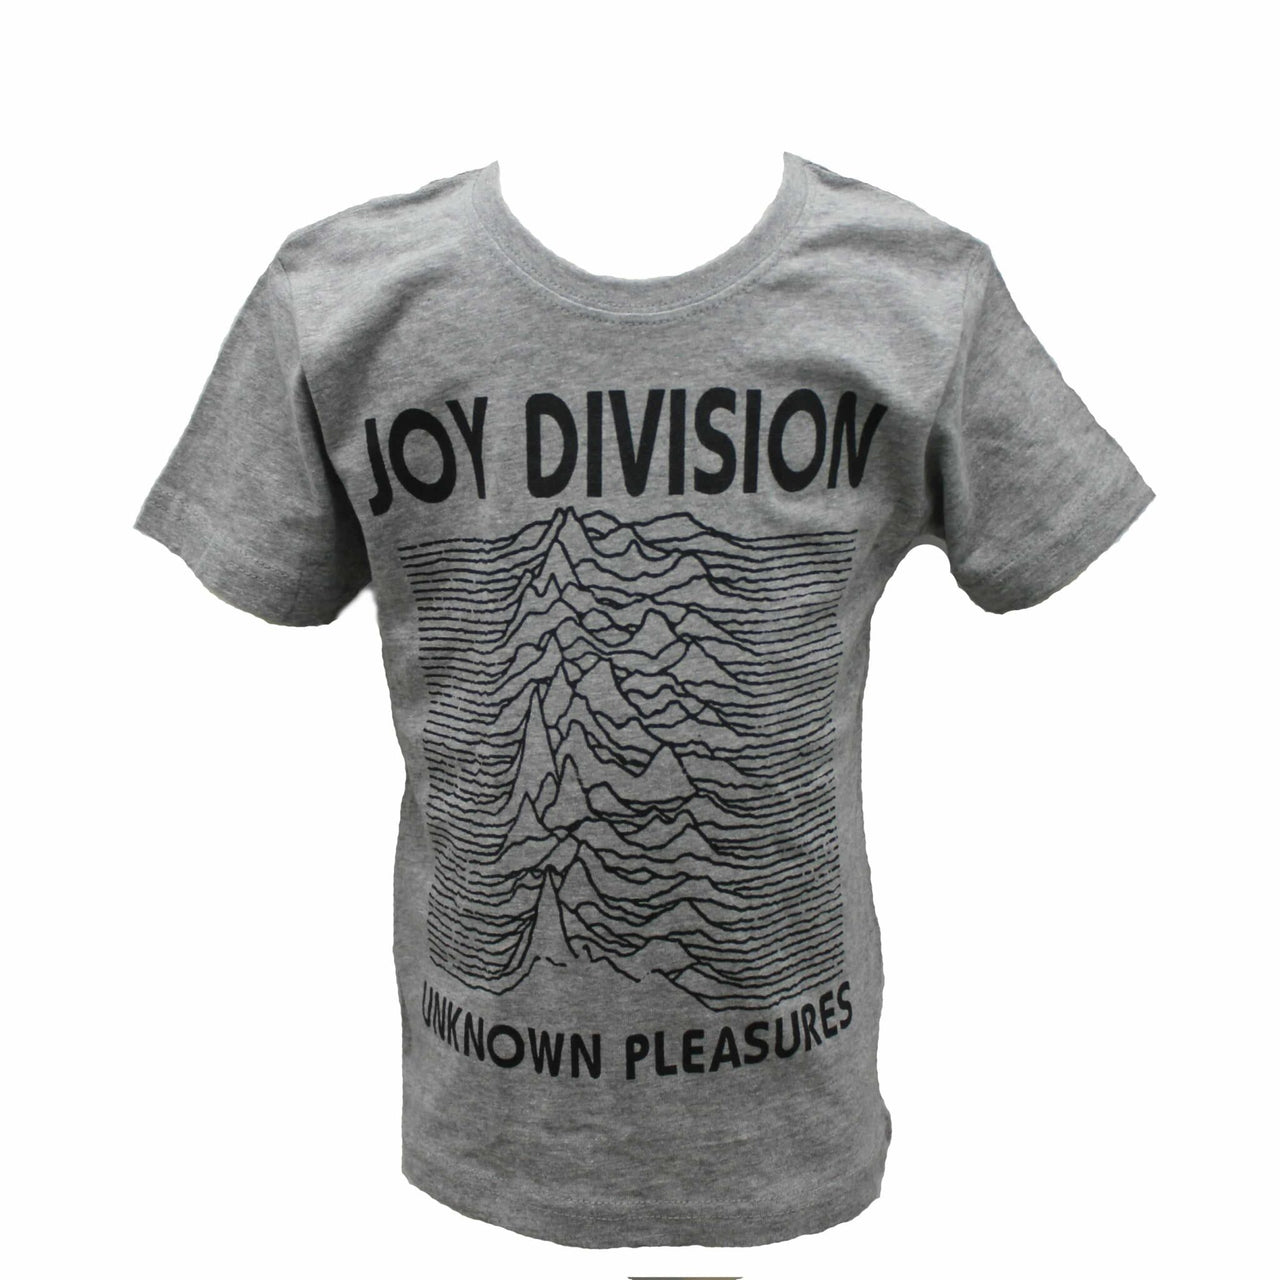 Joy Division Unknown Pleasures Kids Charcoal T-Shirt